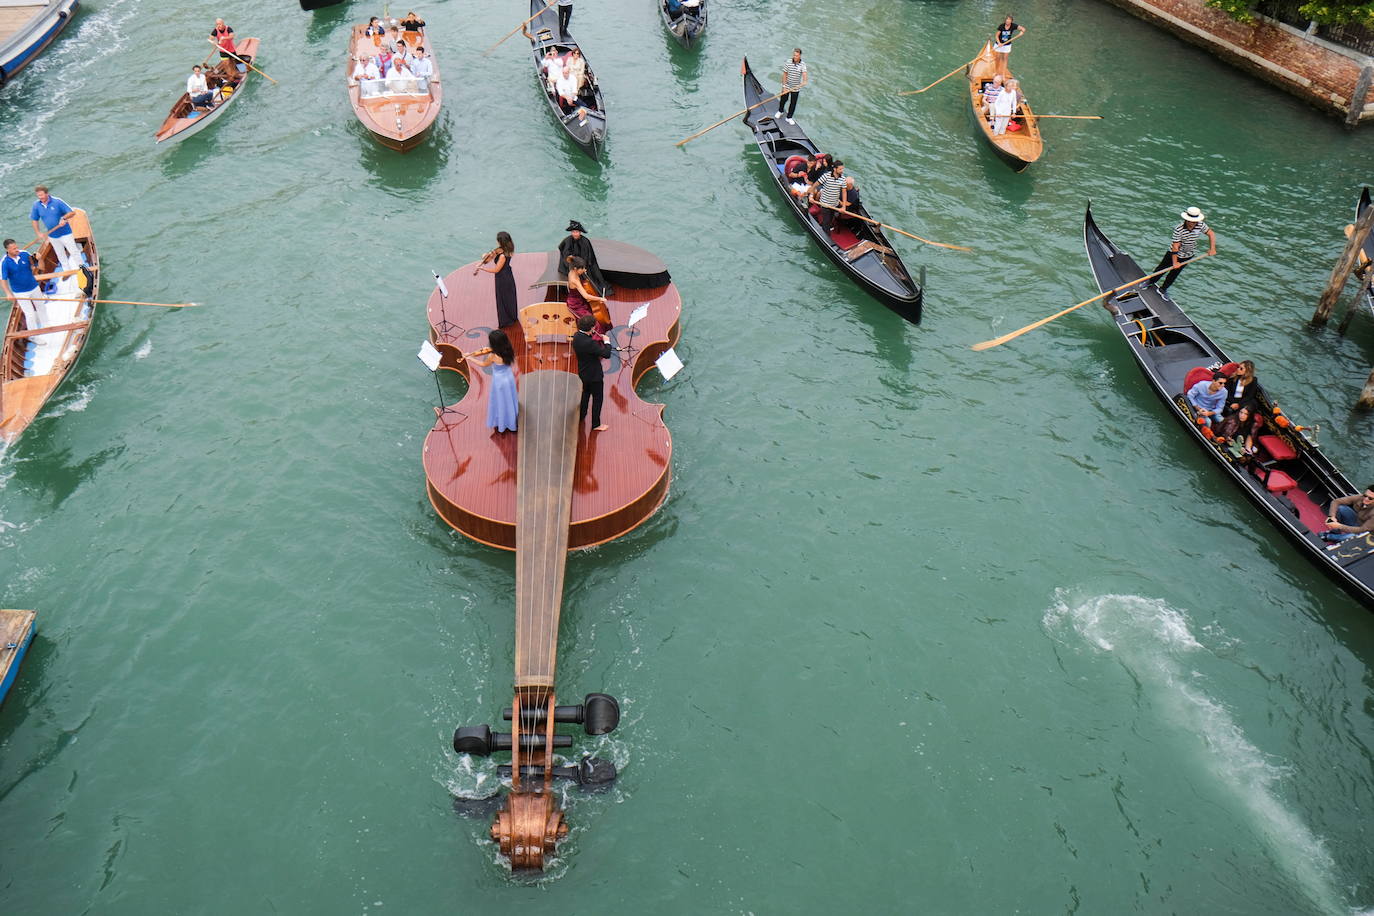 Fotos: Un aguas de Venecia | Las Provincias